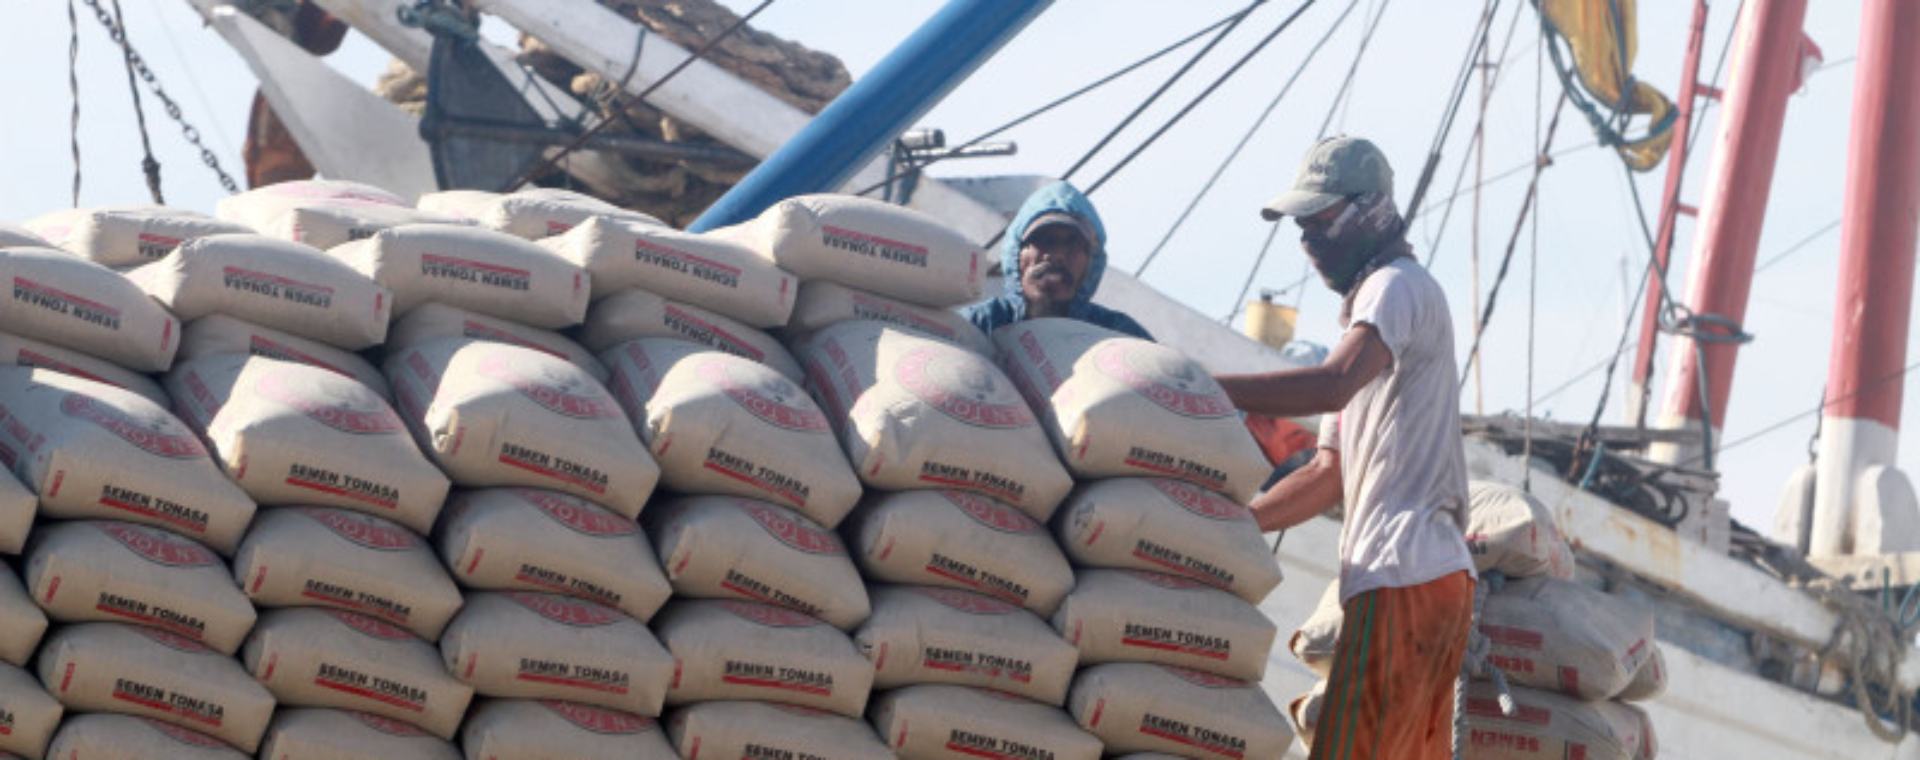 Pekerja memindahkan semen untuk diangkut ke kapal di Pelabuhan Paotere, Makassar, Sulawesi Selatan, Selasa (25/2). /BISNIS.COm